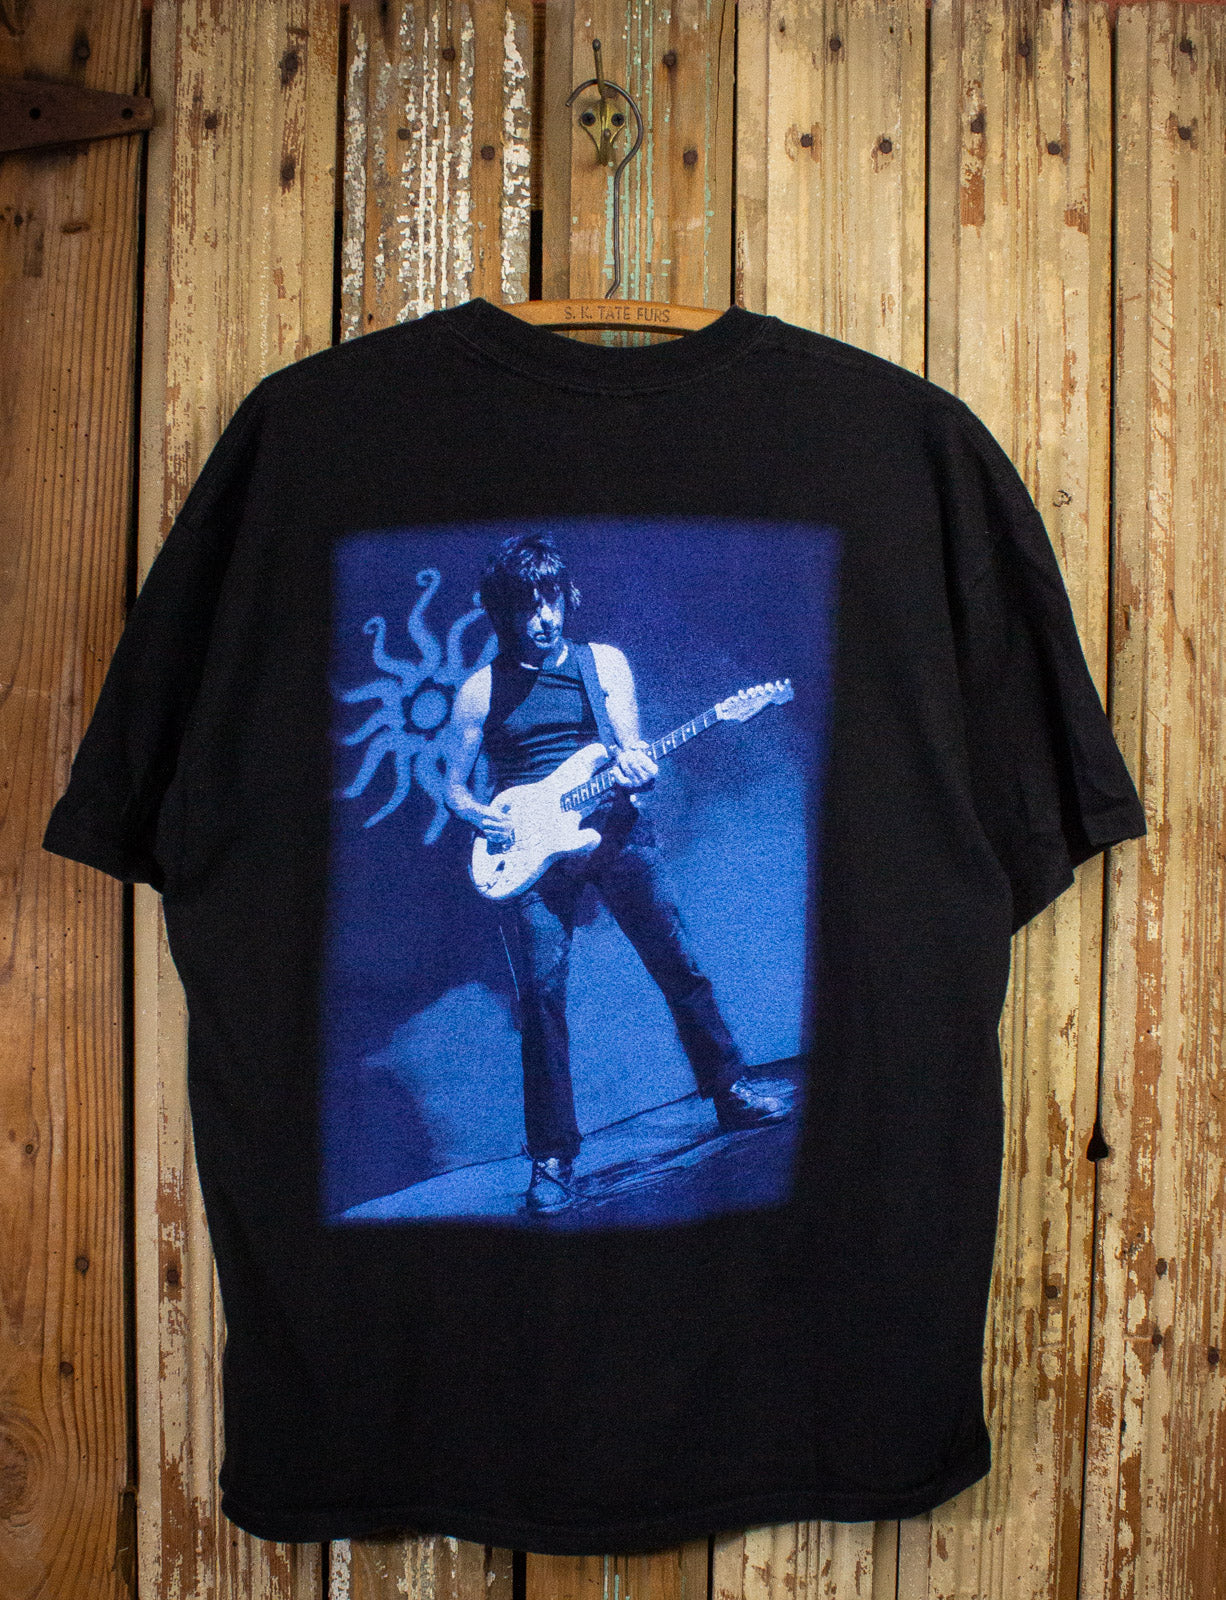 Vintage Jeff Beck Concert T Shirt 2003 Black XL